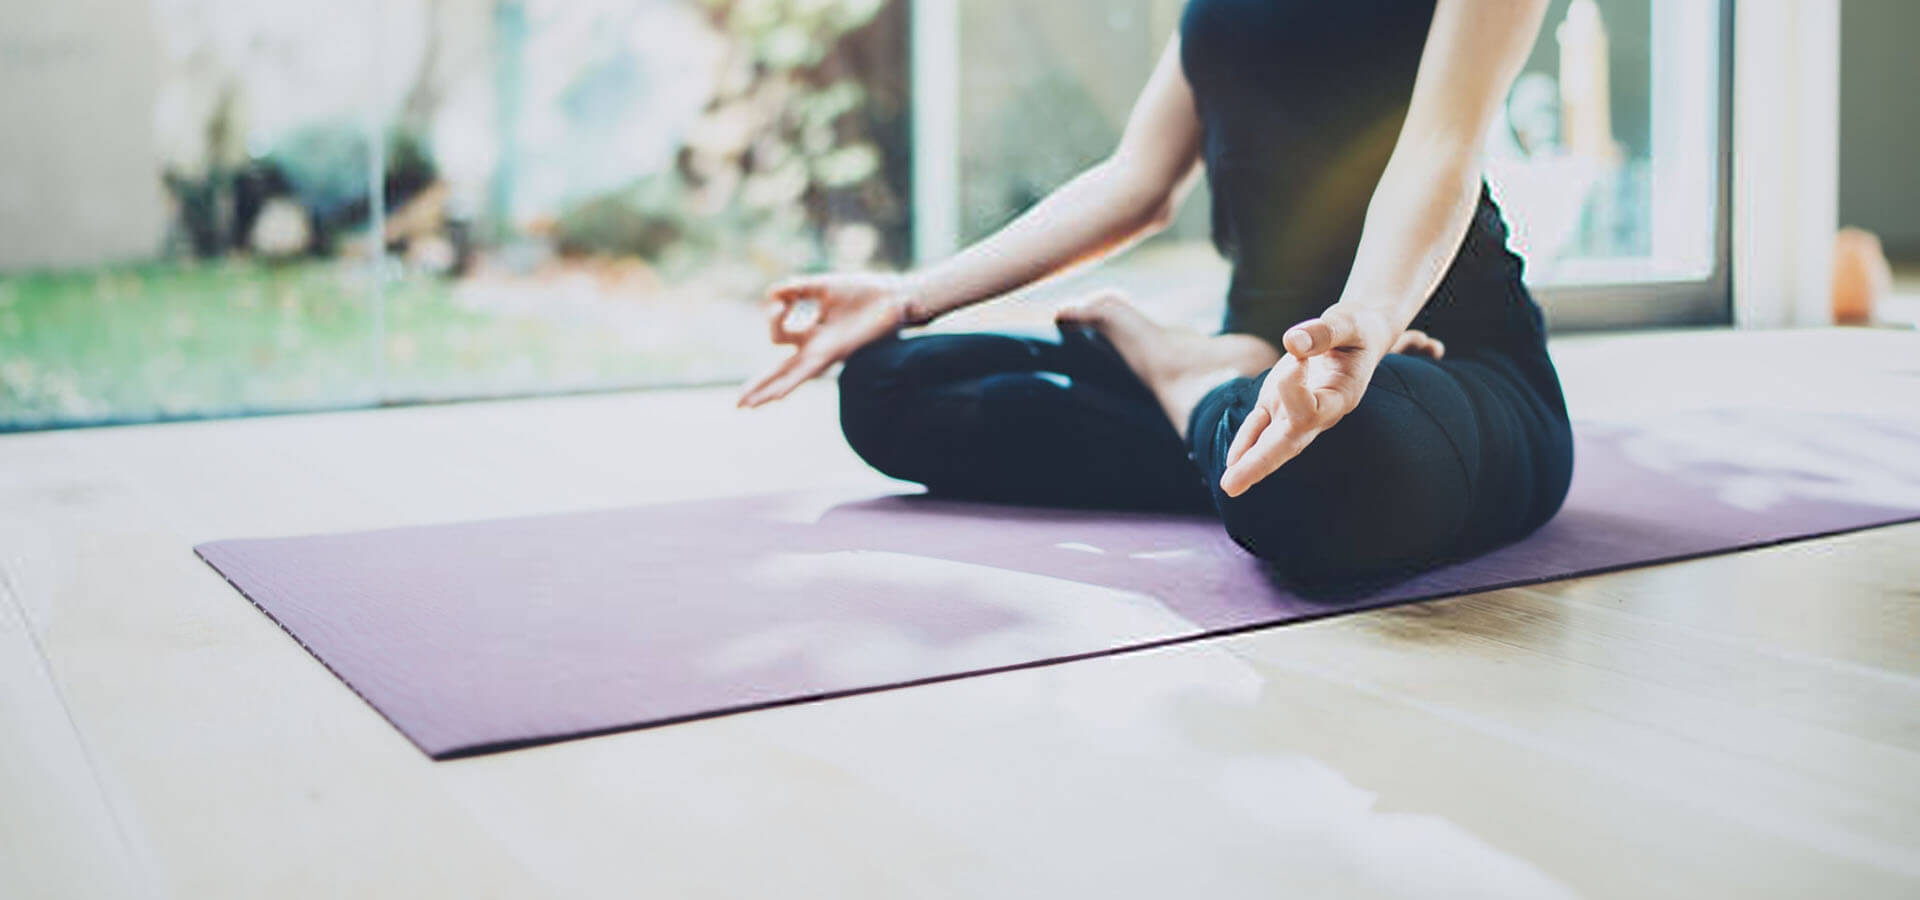 Frau macht Yoga auf Yogamatte